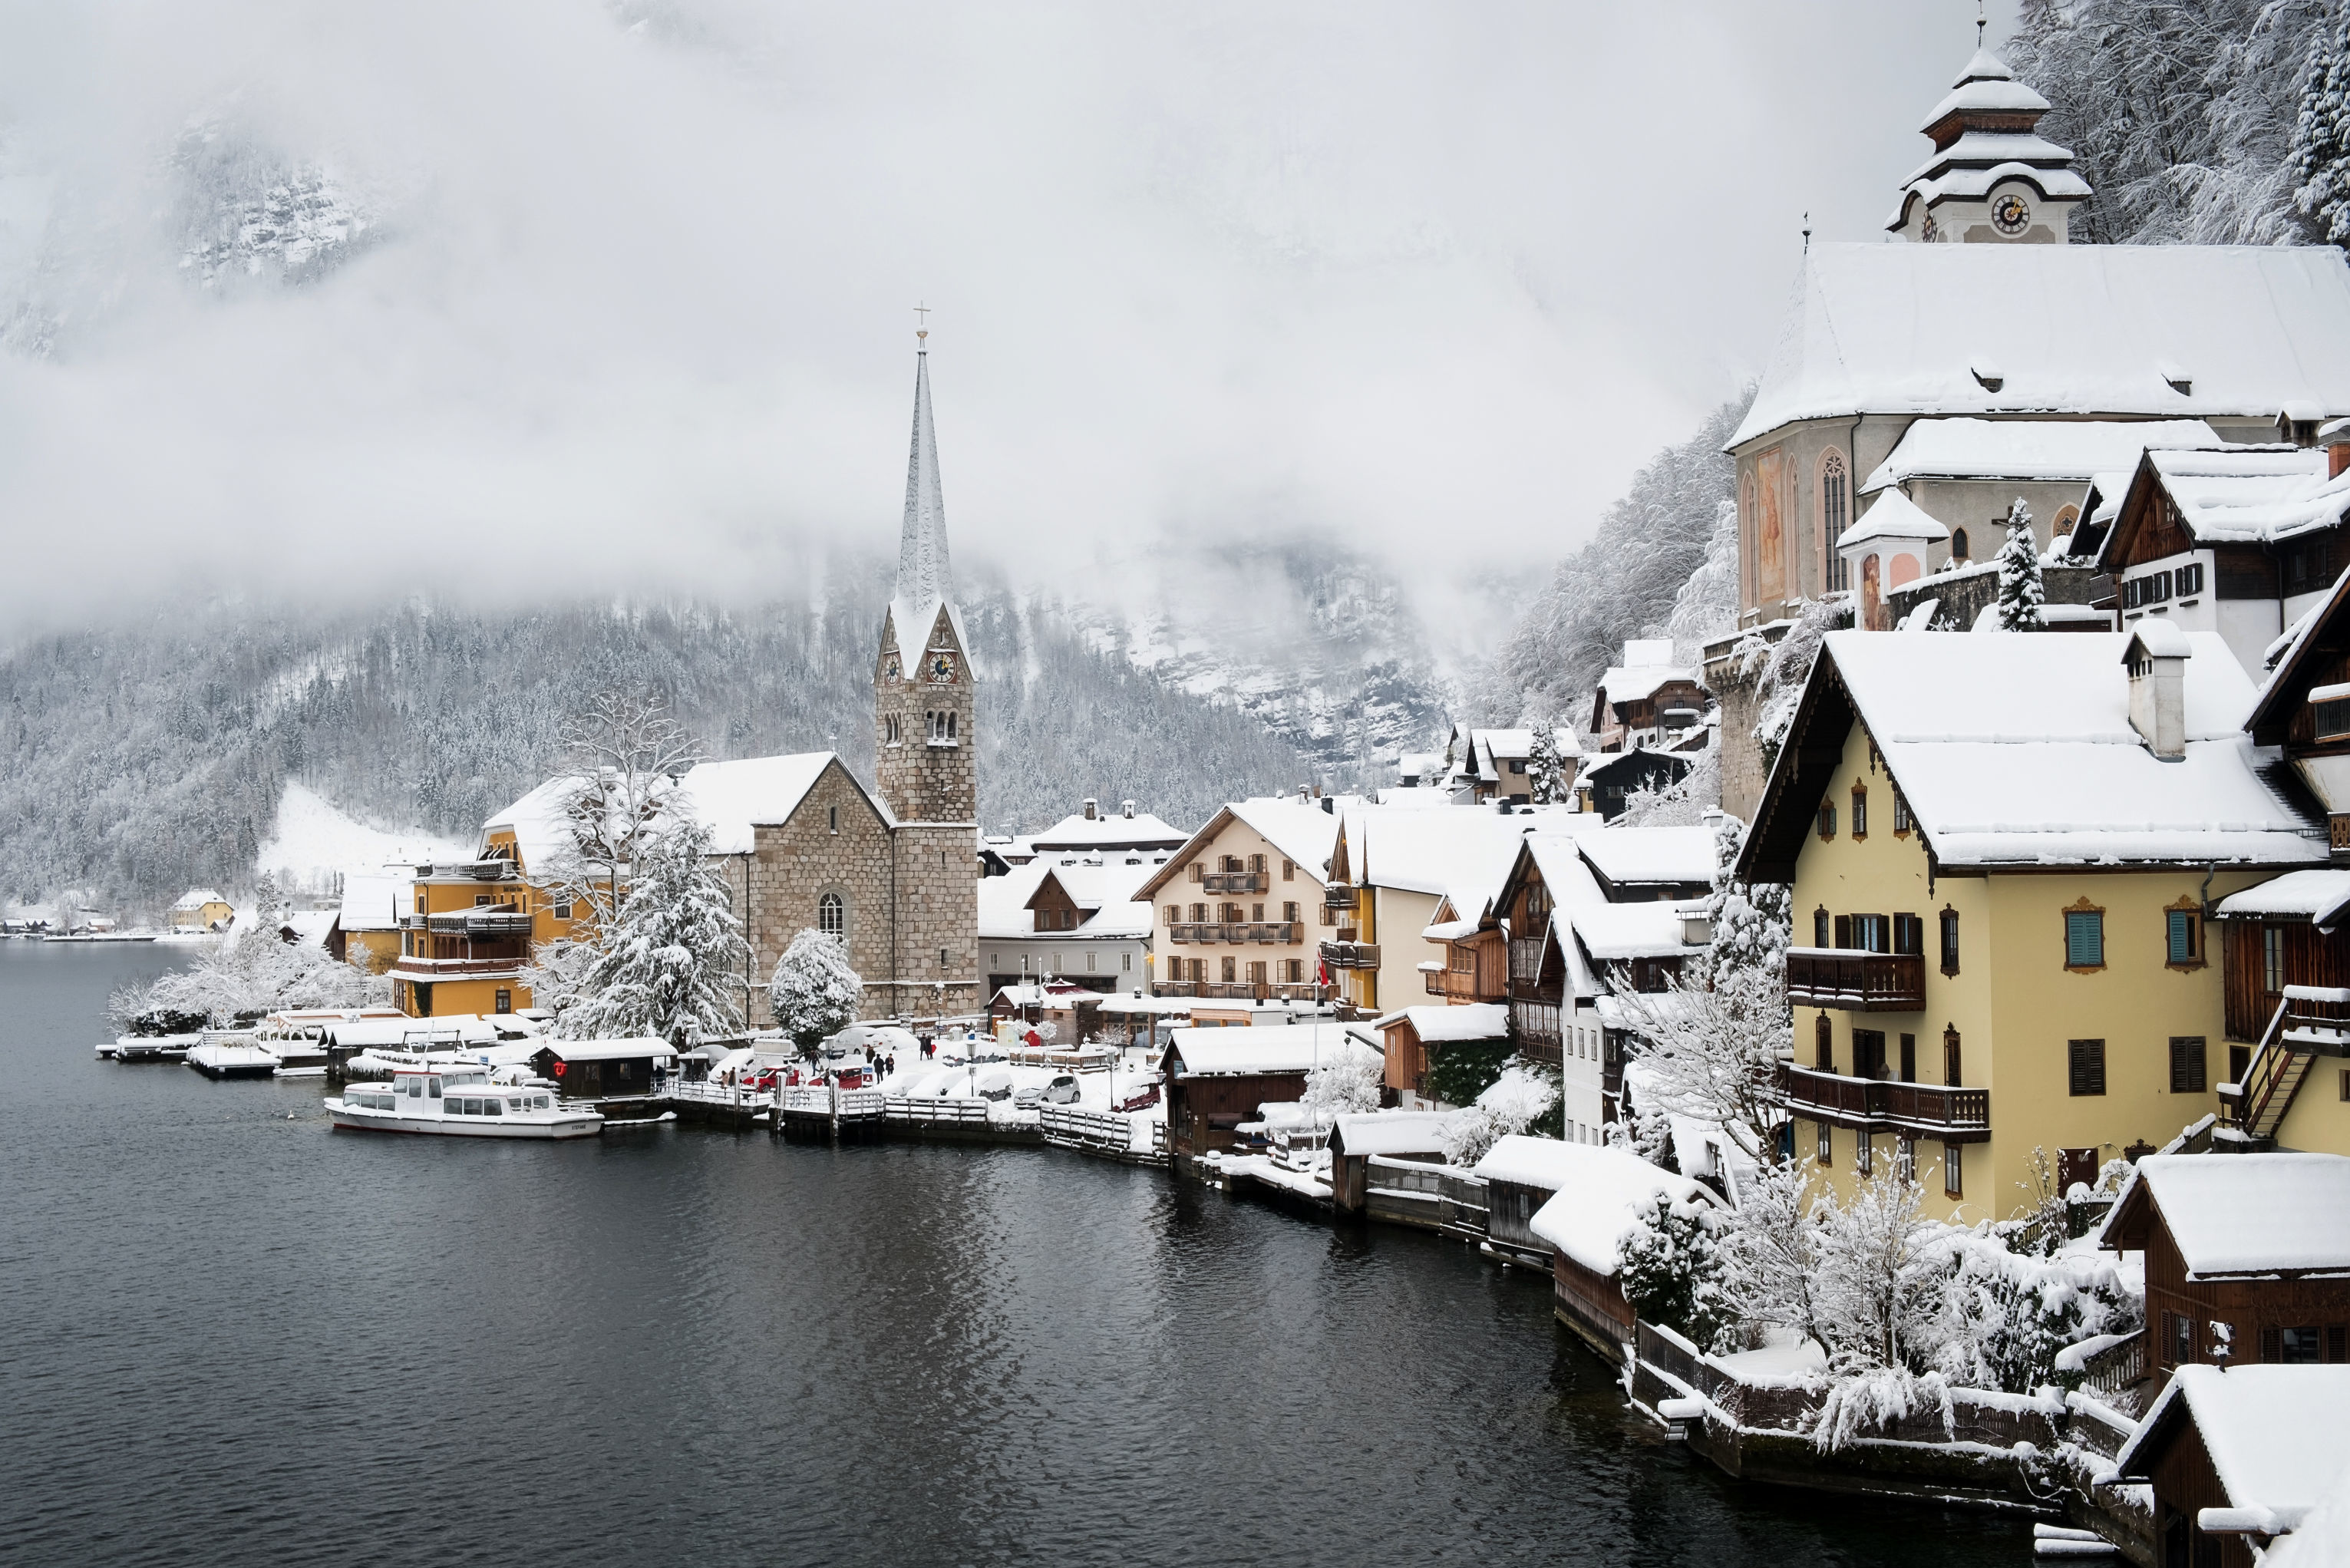 游客正在摧毁酷似《冰雪奇缘》艾伦戴尔王国的奥地利小镇